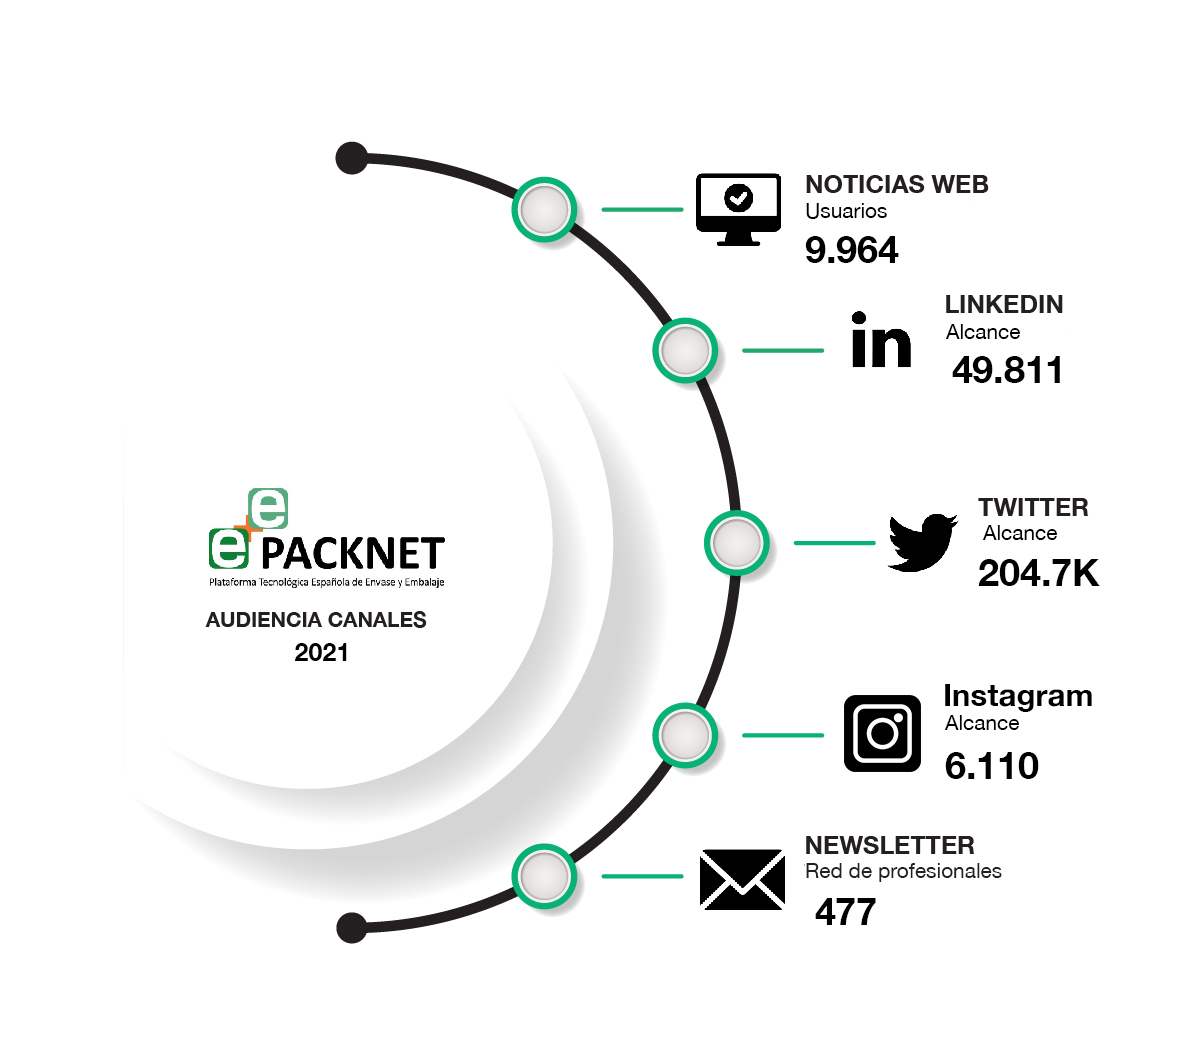 Audiencia-canales-packnet-2021